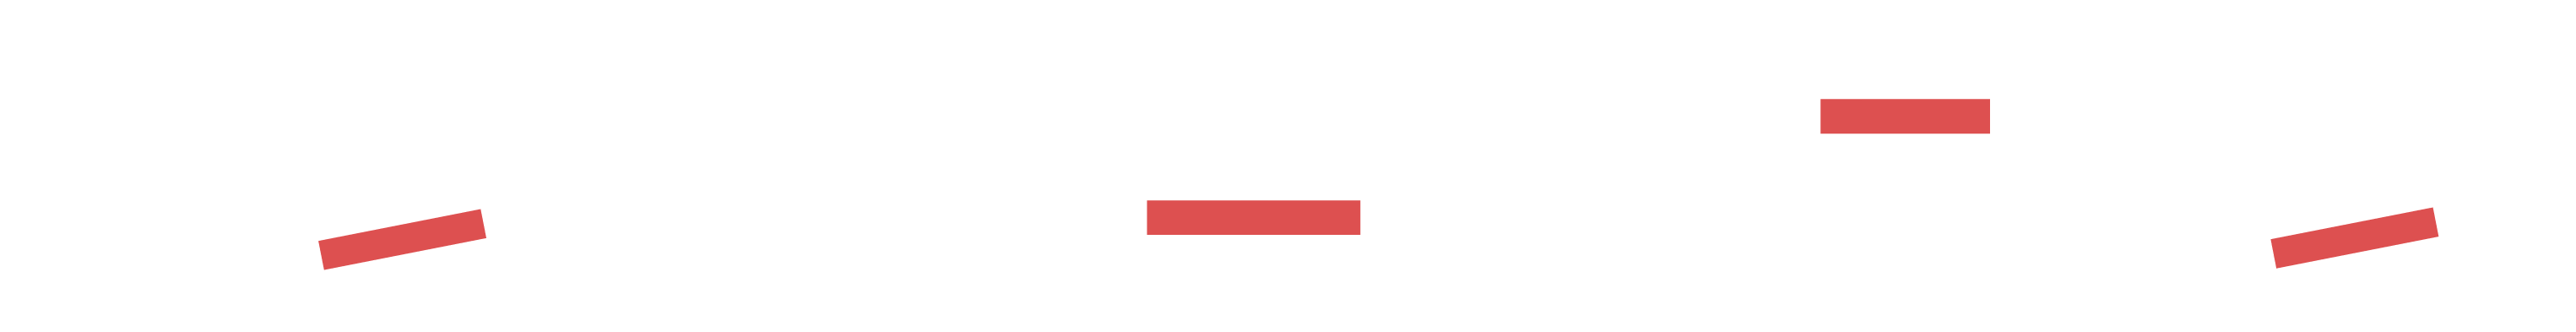 Media Culture Reversed Logo